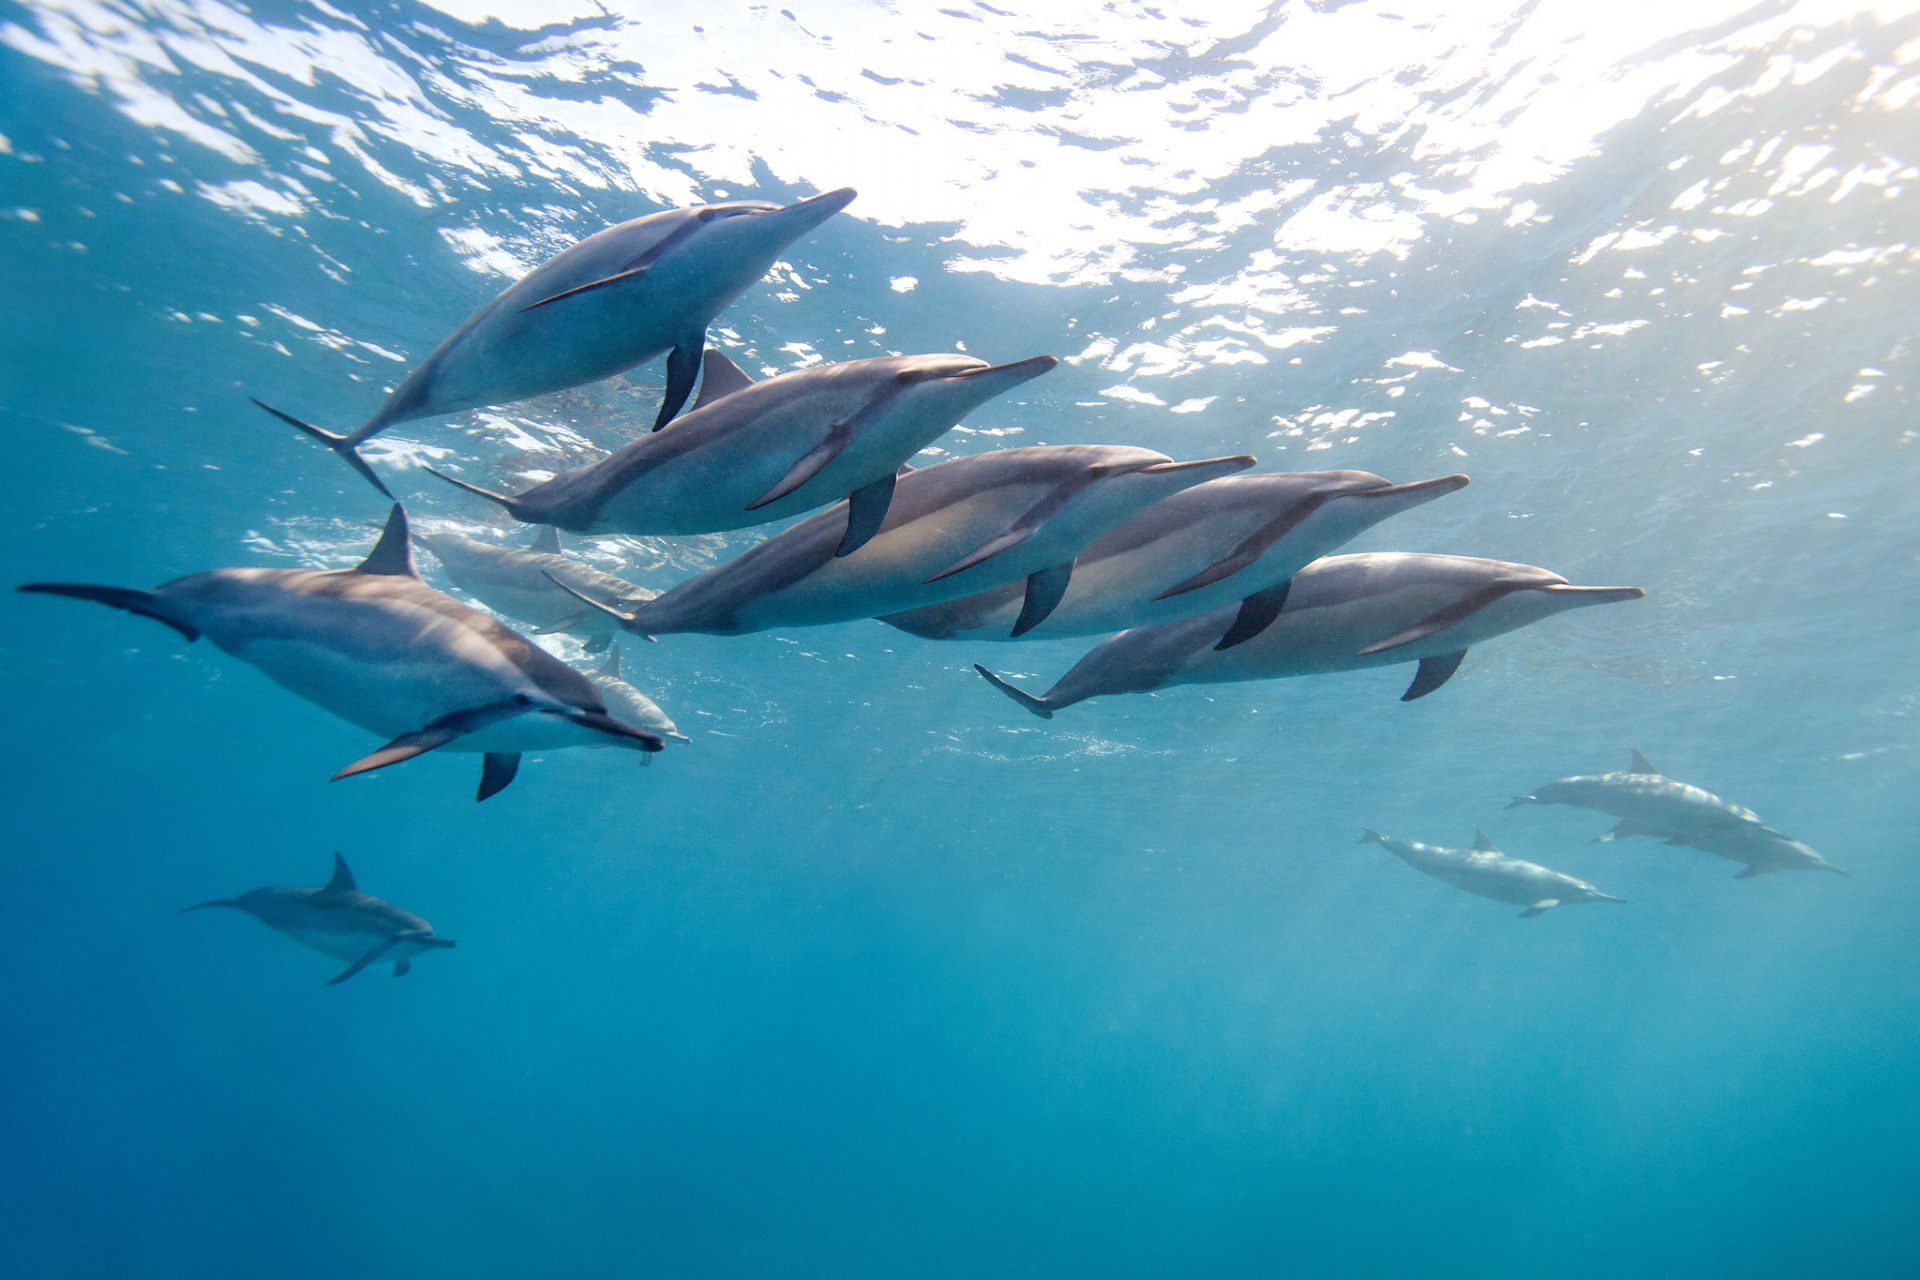 длинноносый дельфин малоголовый продельфин длиноклювая стенелла тропический дельфин гаваи океан вода стая джеймс скотт рд фотография